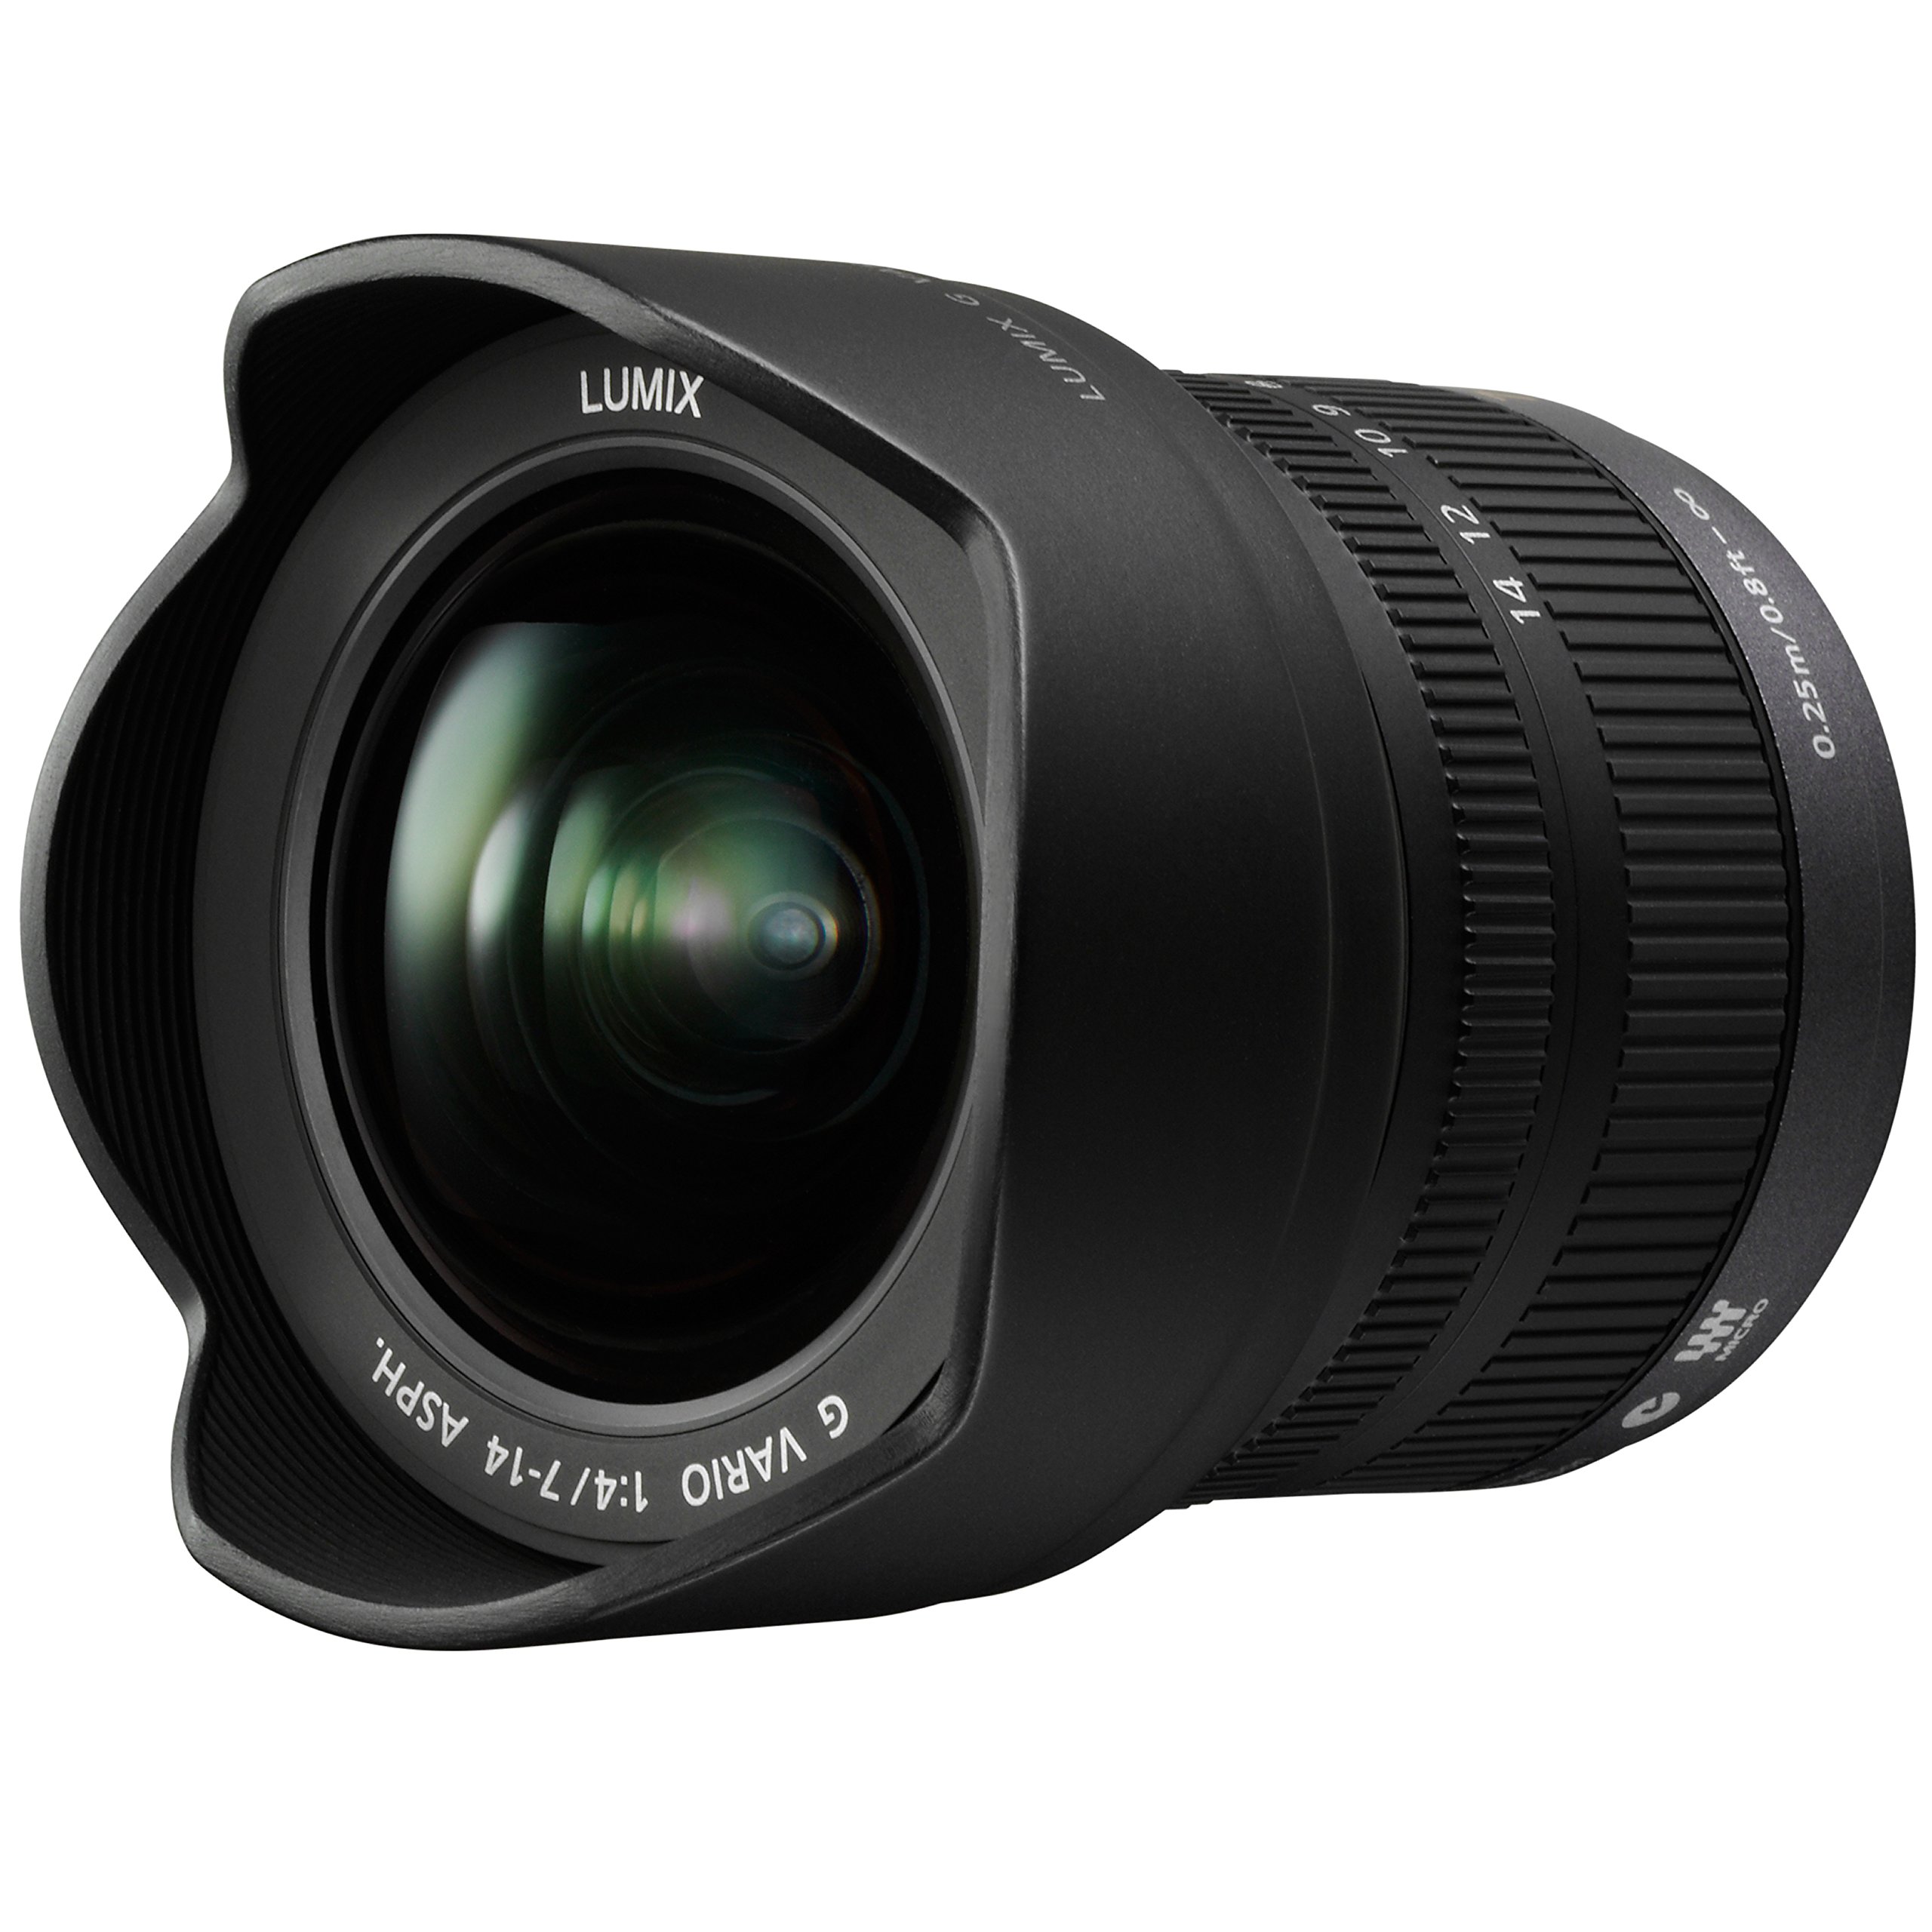 Lumix G Vario 7-14mm f/ 4.0 Asph Lens